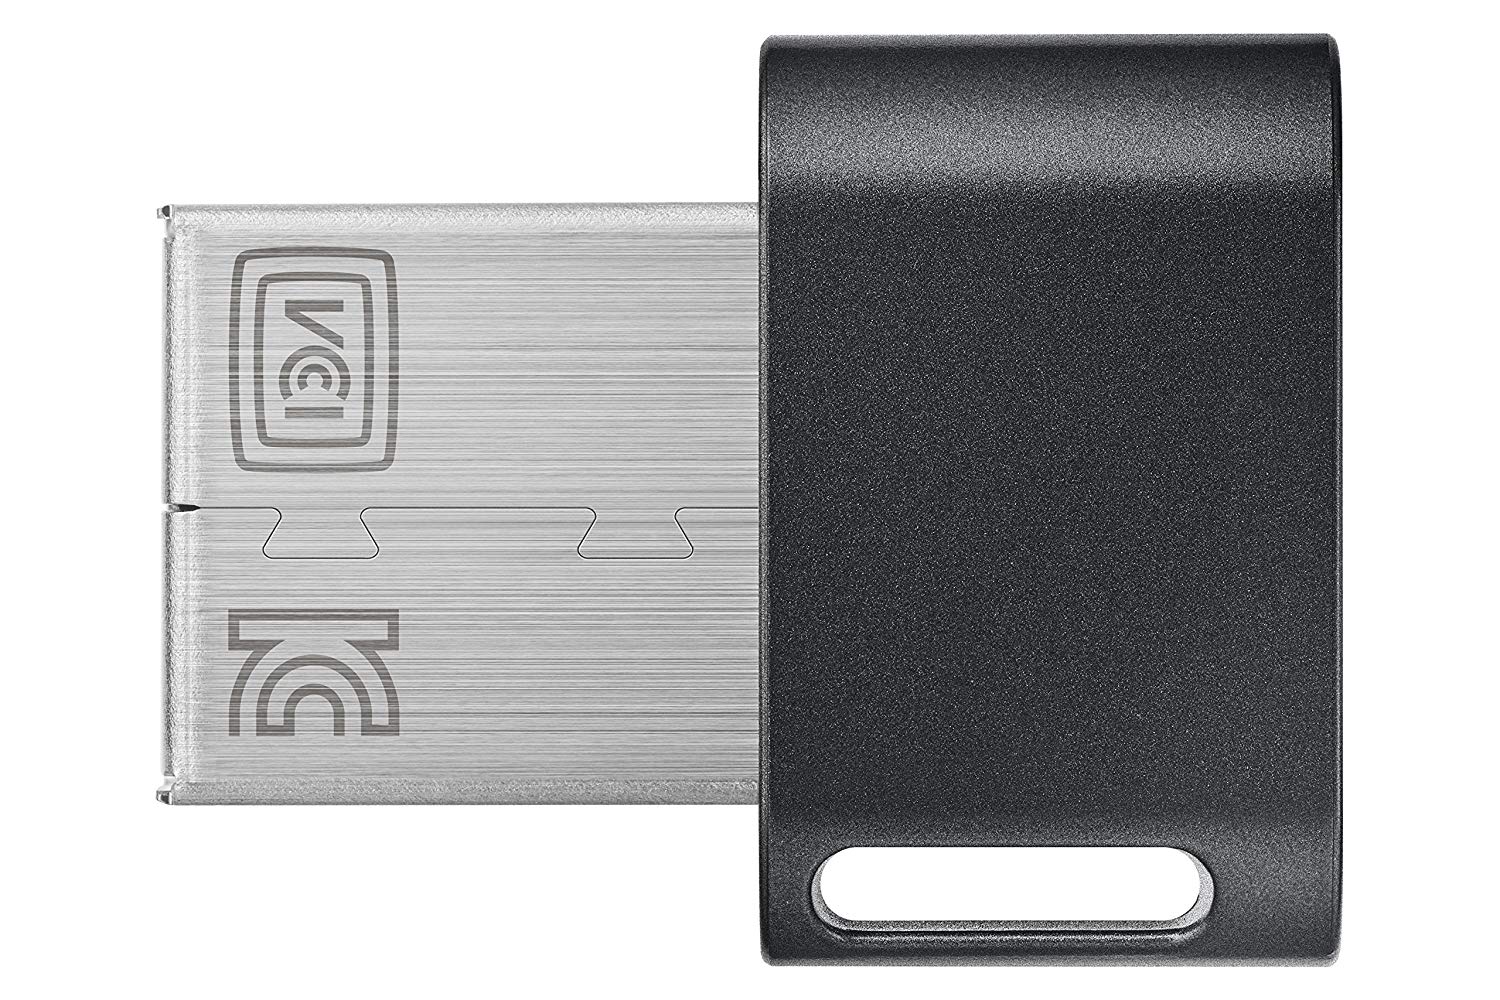 SAMSUNG USB 3.1 FLASH DRIVE FIT PLUS